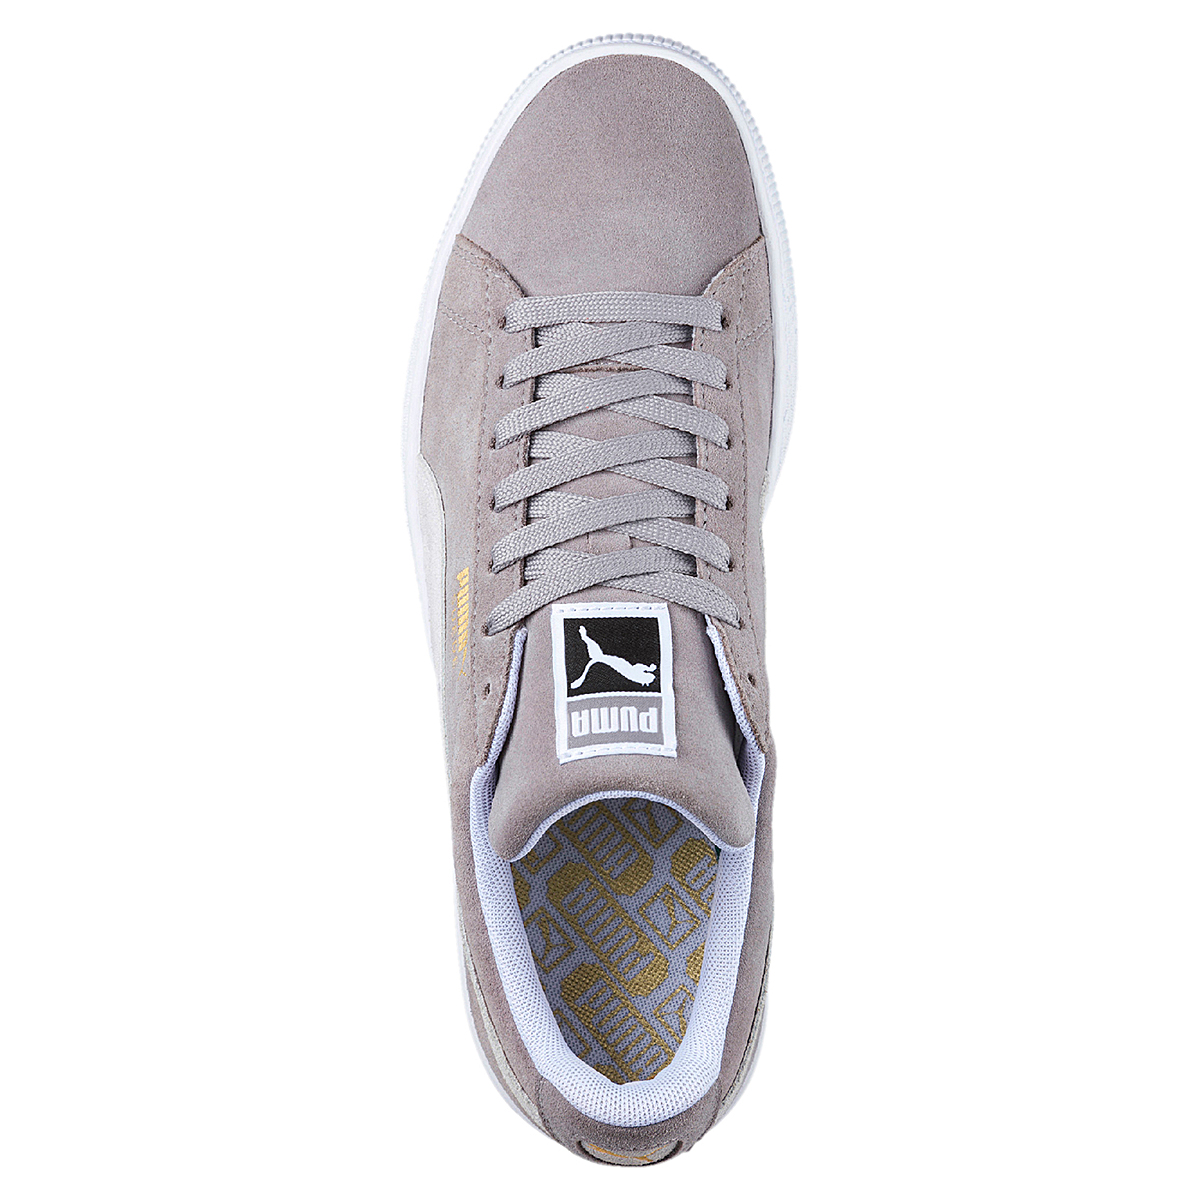 Puma Suede Classic Unisex Sneaker Low-Top grau 365347 01